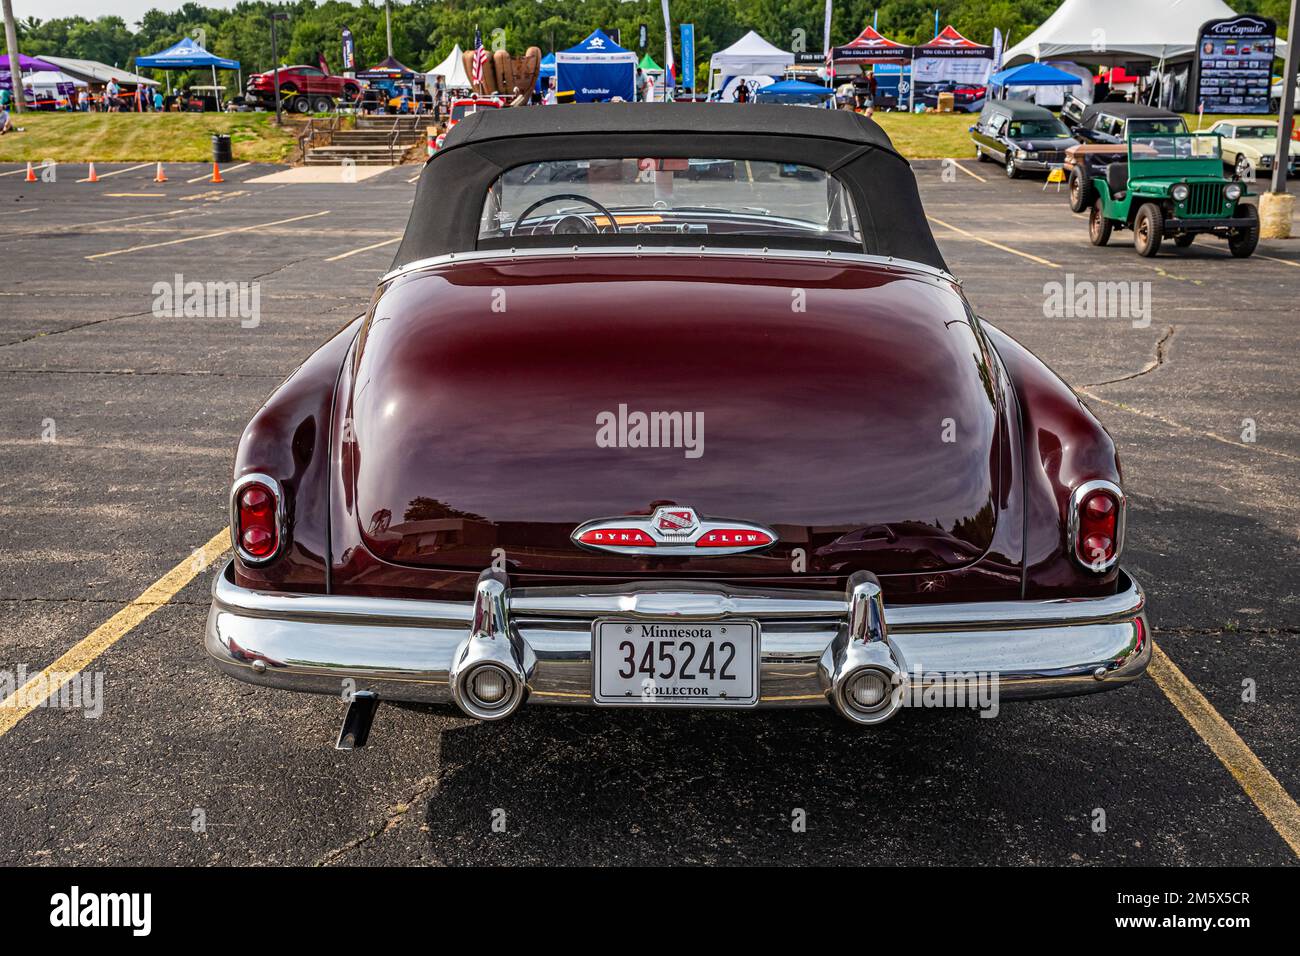 Iola, WI - 07 juillet 2022 : vue arrière à grande perspective d'un cabriolet huit de Buick 1950 lors d'un salon automobile local. Banque D'Images